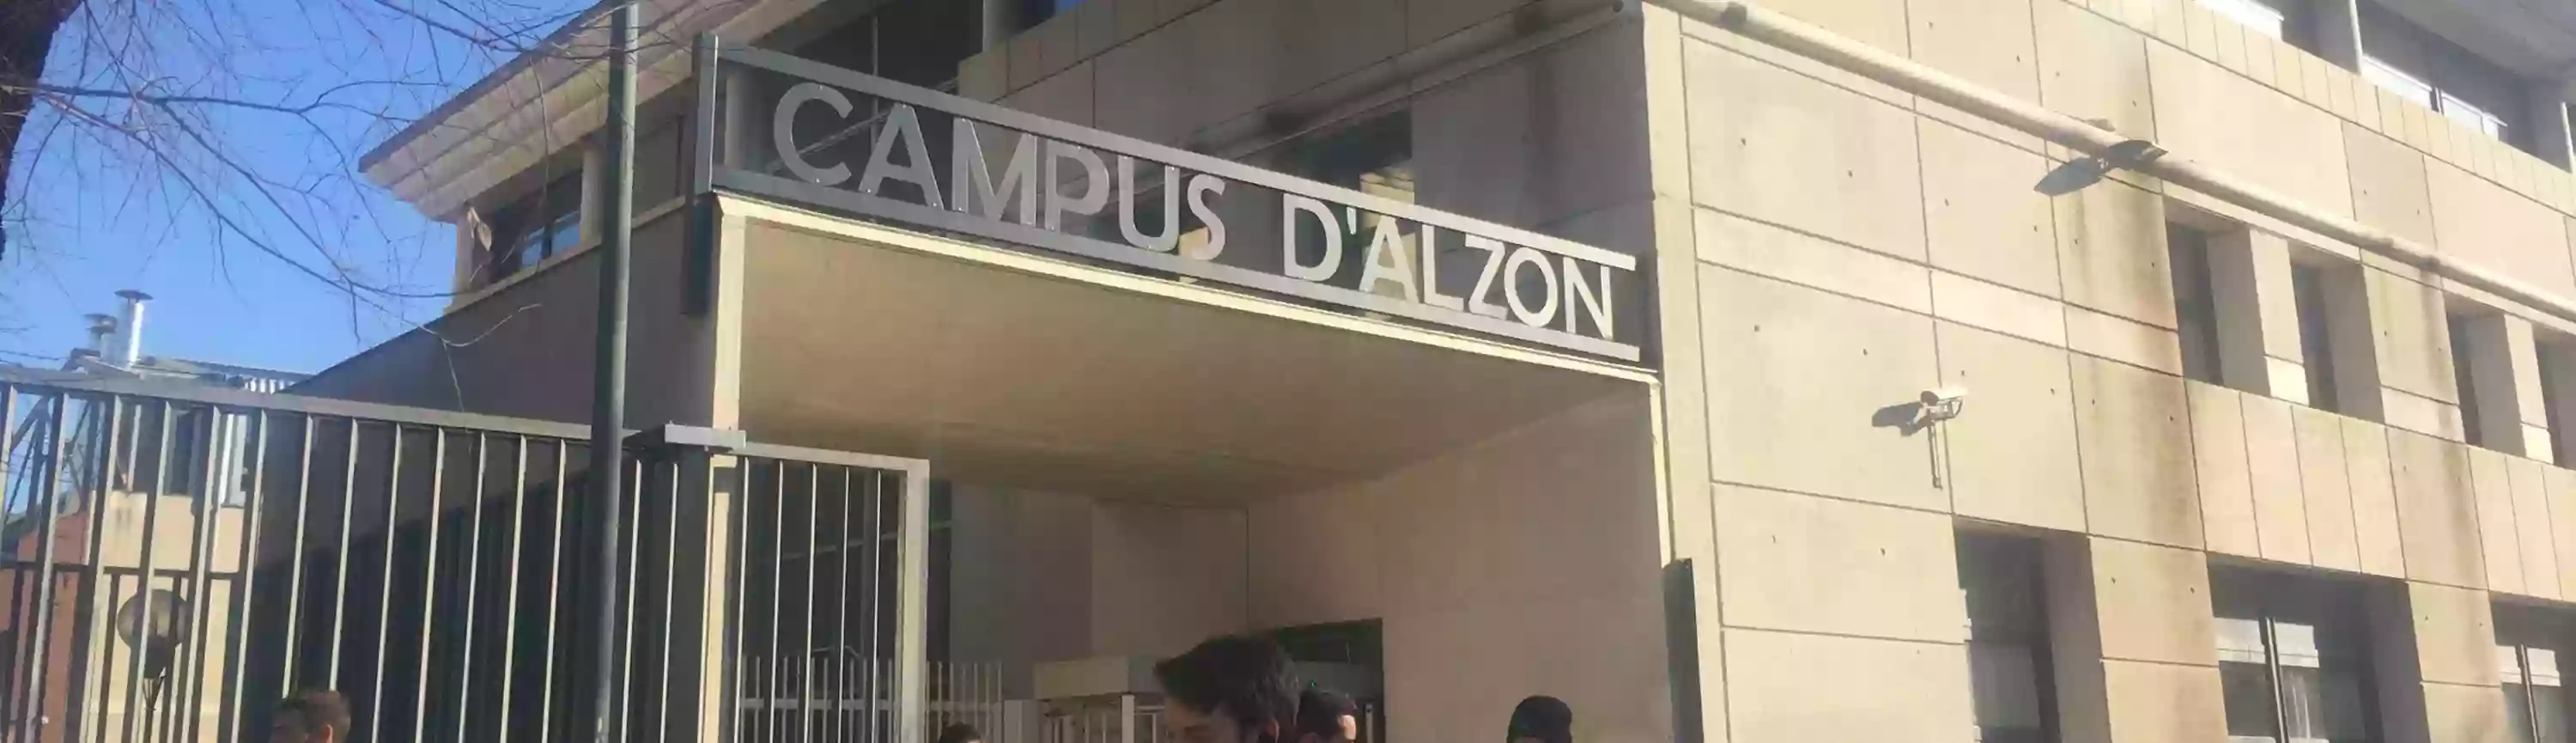 L'internat Campus d'Alzon